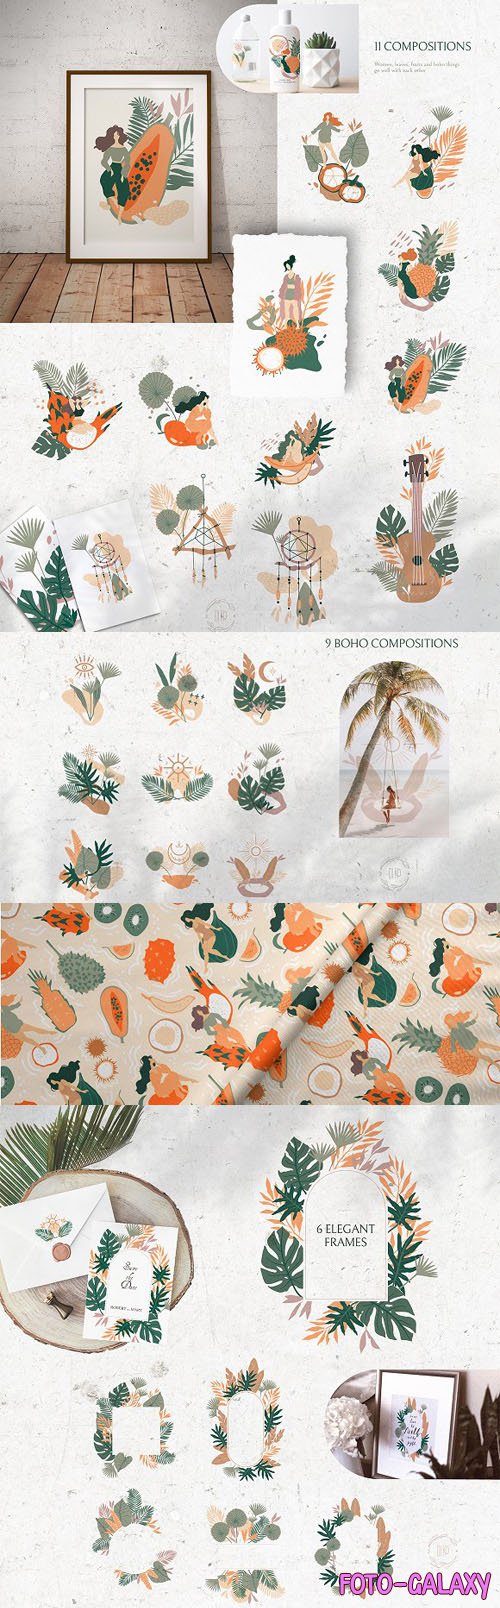 Gentle Tropics Graphic Kit